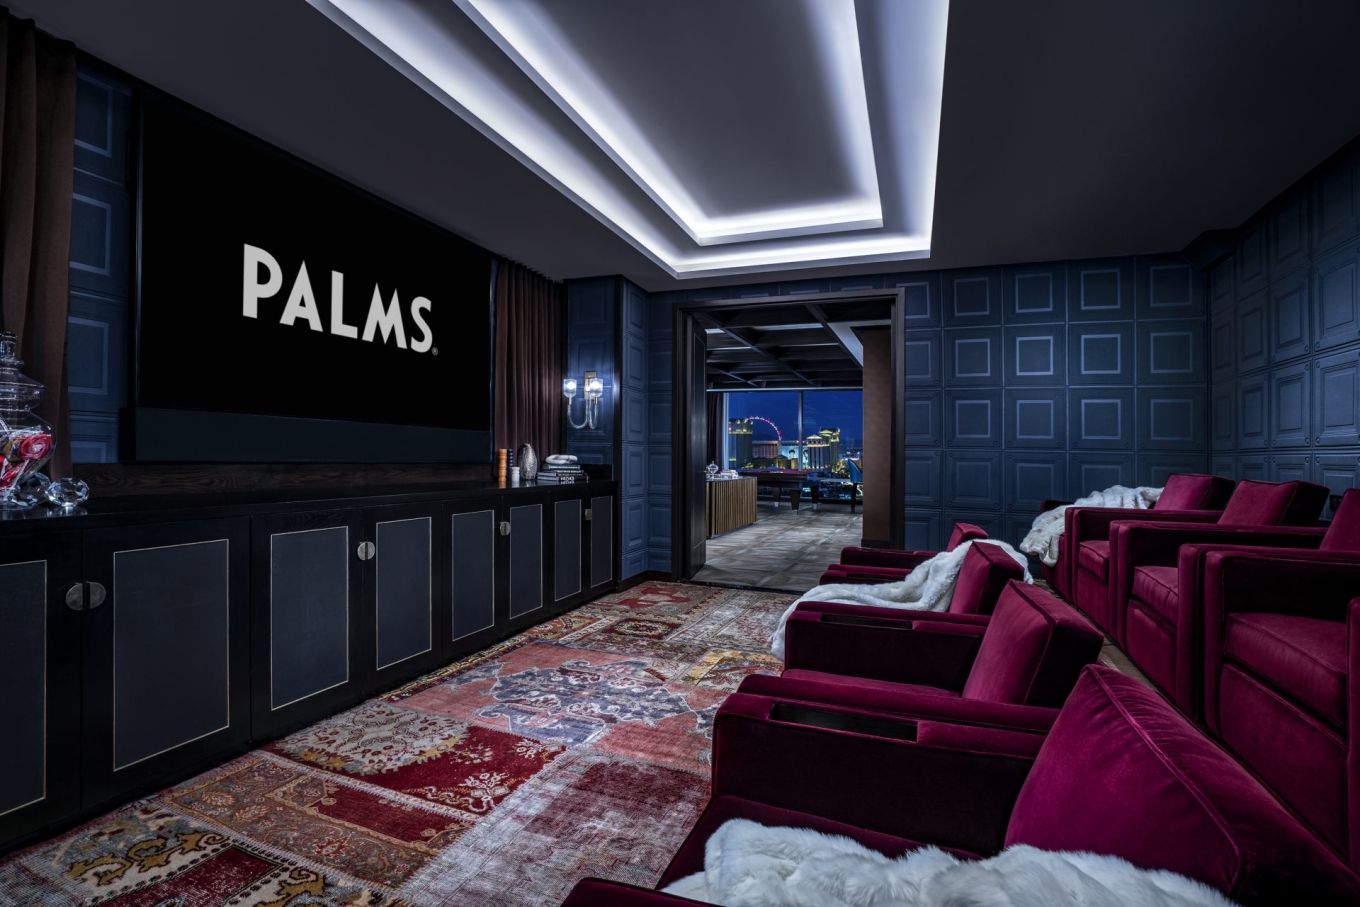 Palms Cinema Theater